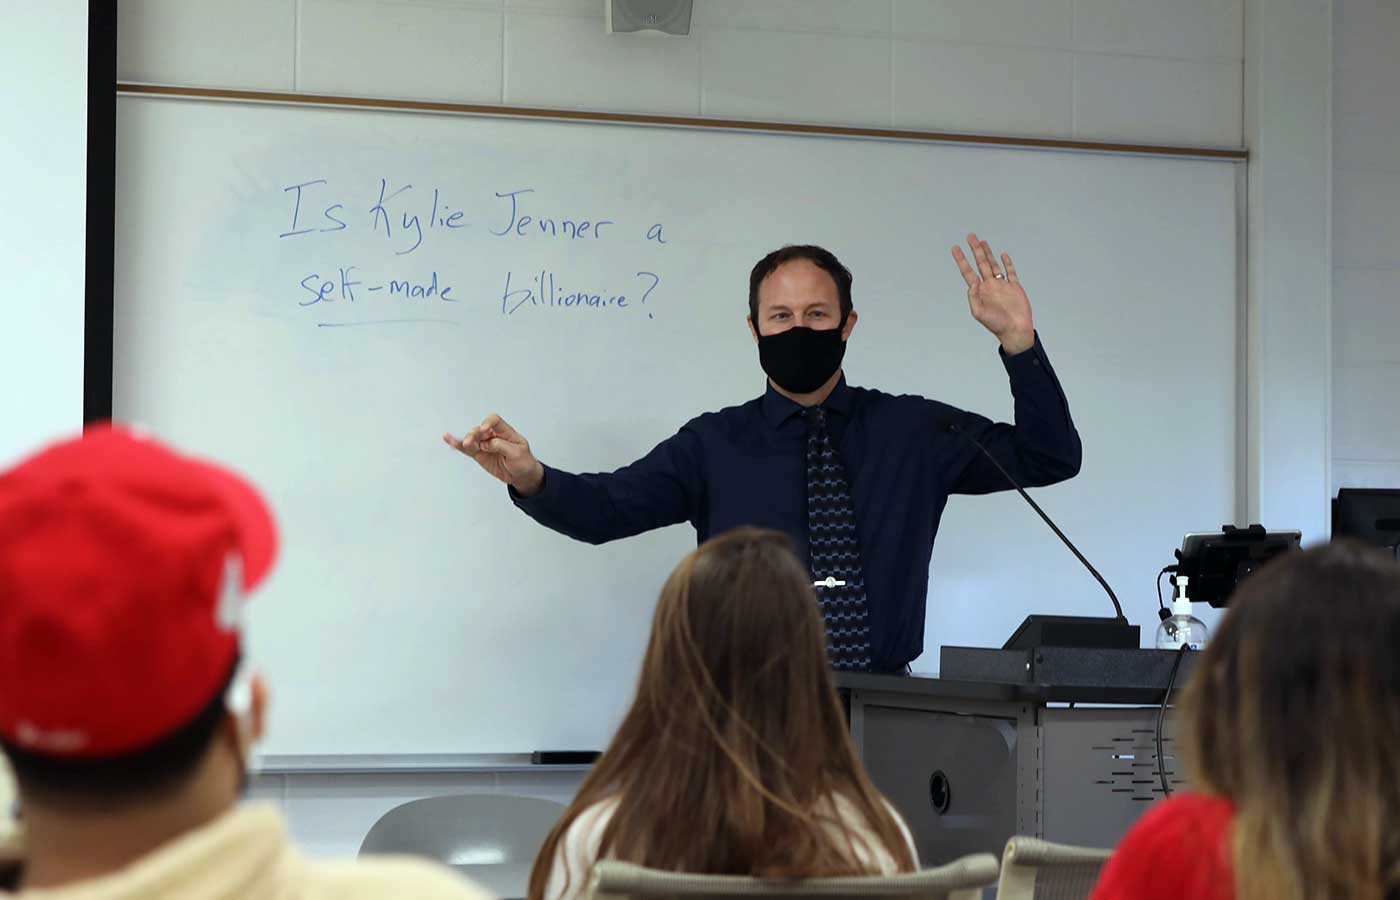 Scott Mattingly teaching a class